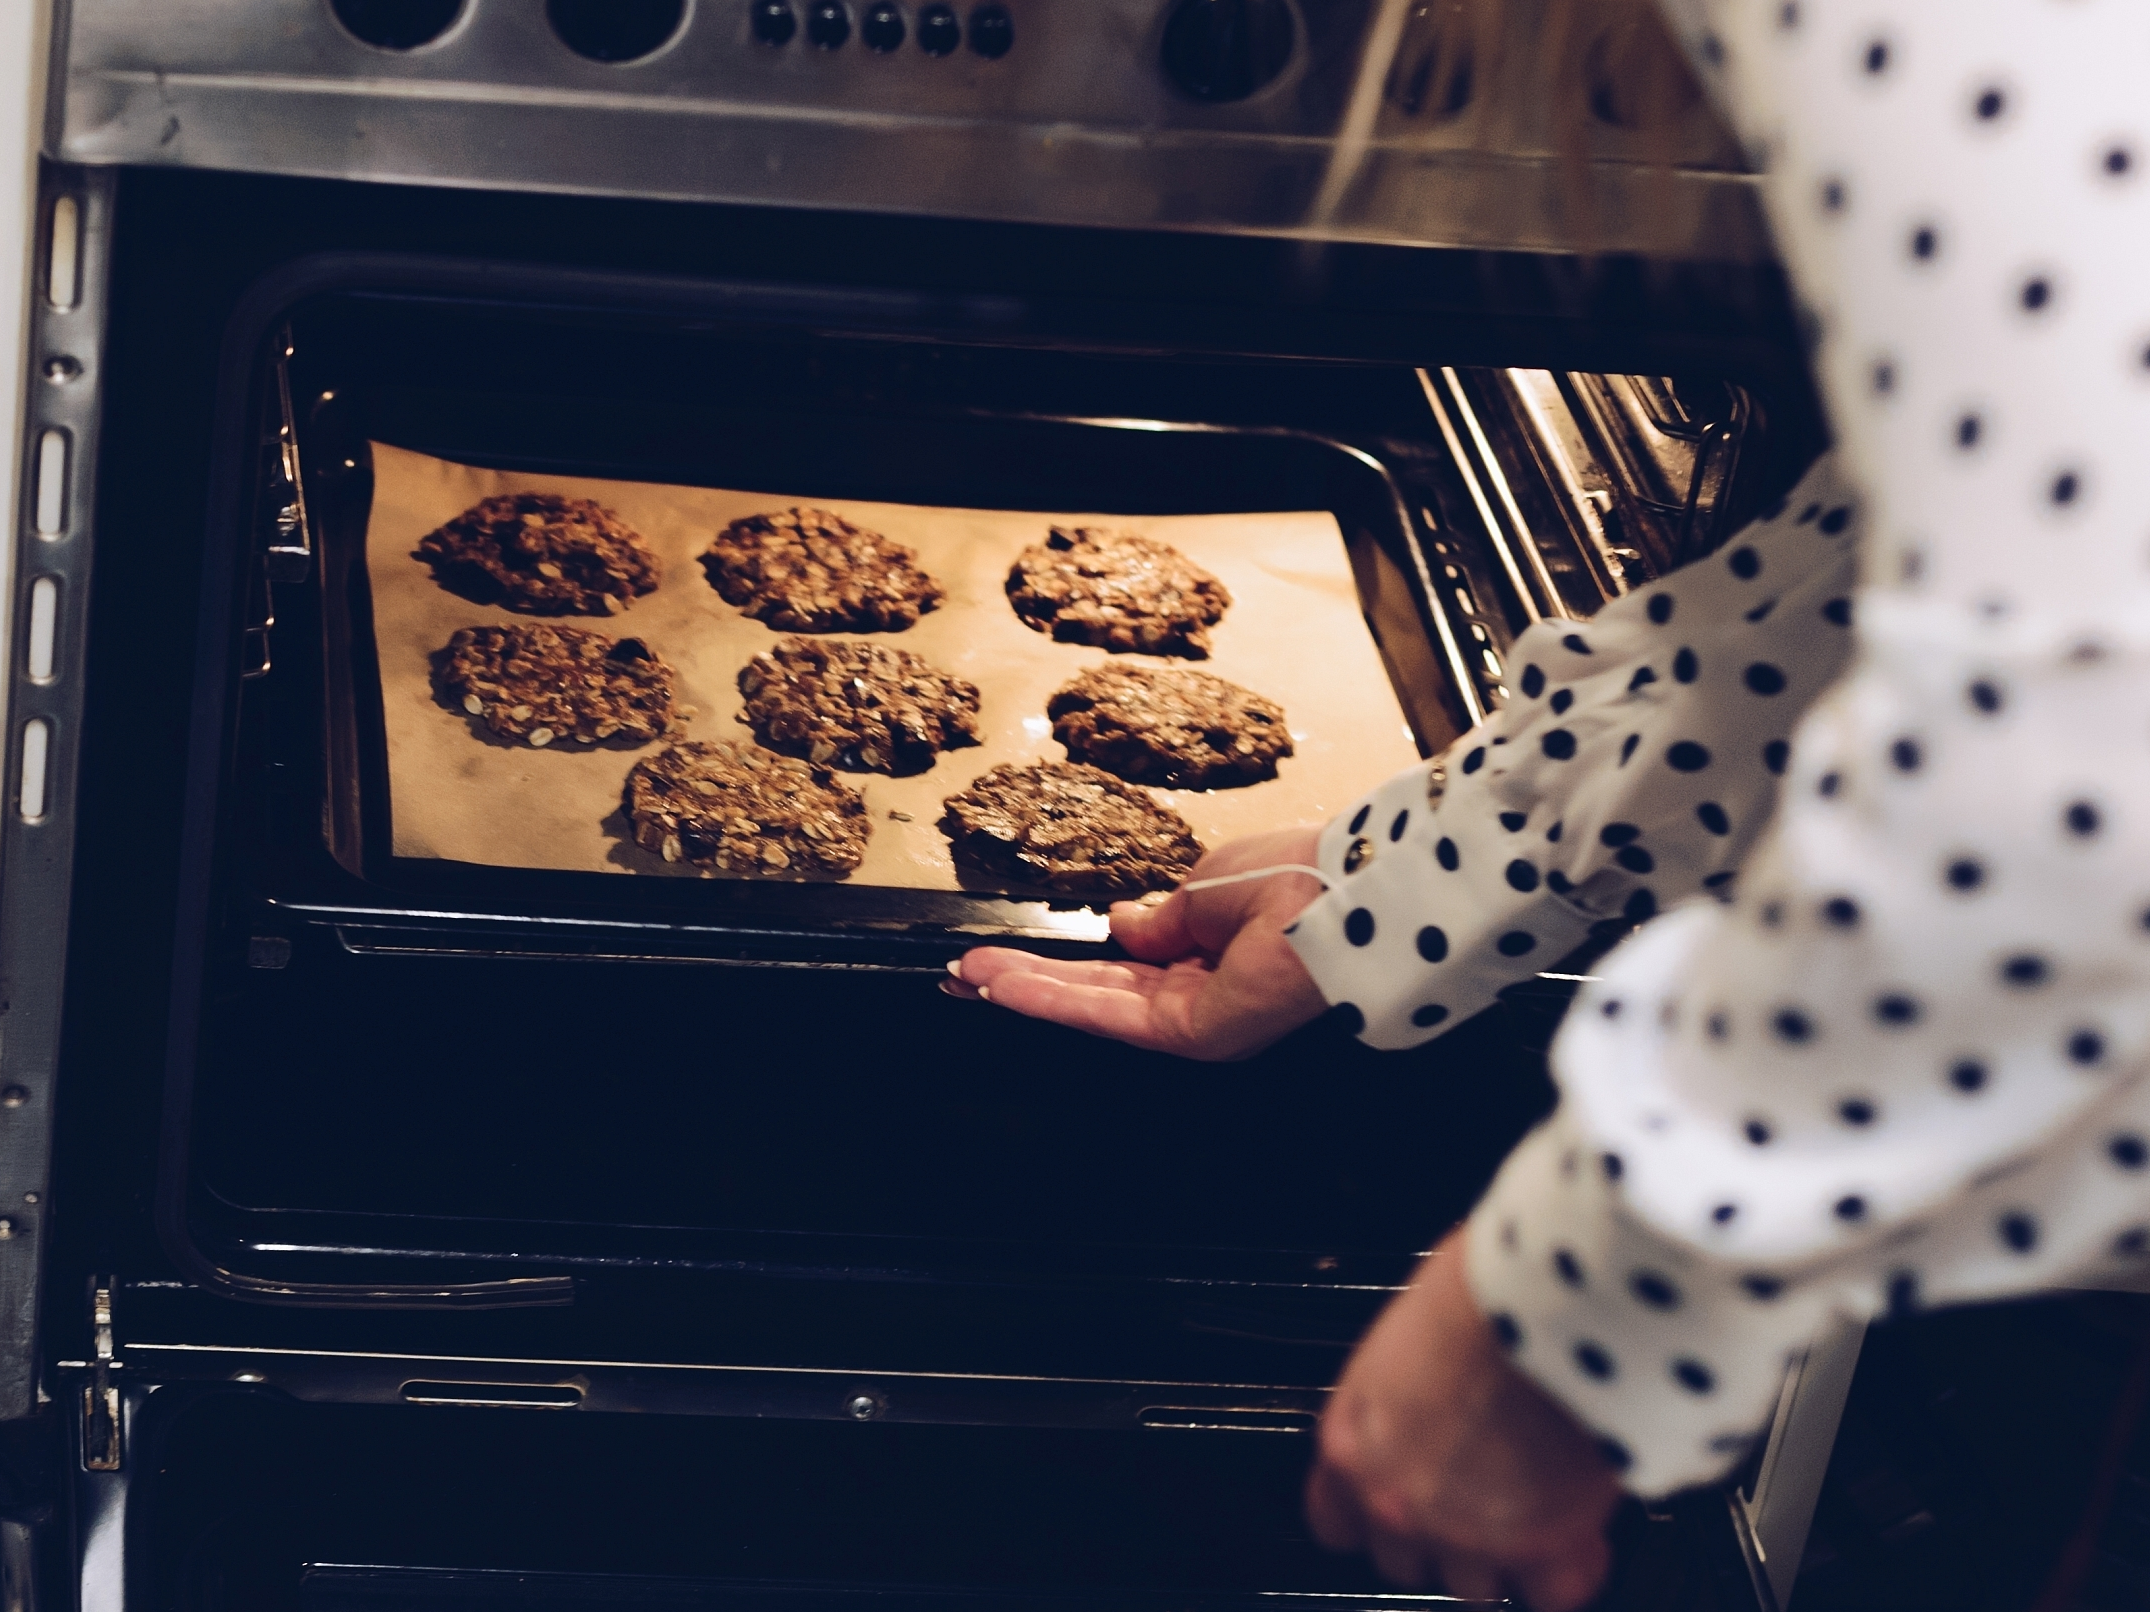 Печенье в духовке время. Печь печенье. Печенье из духовки. Печет печенье в духовке. Духовка с печеньем внутри.